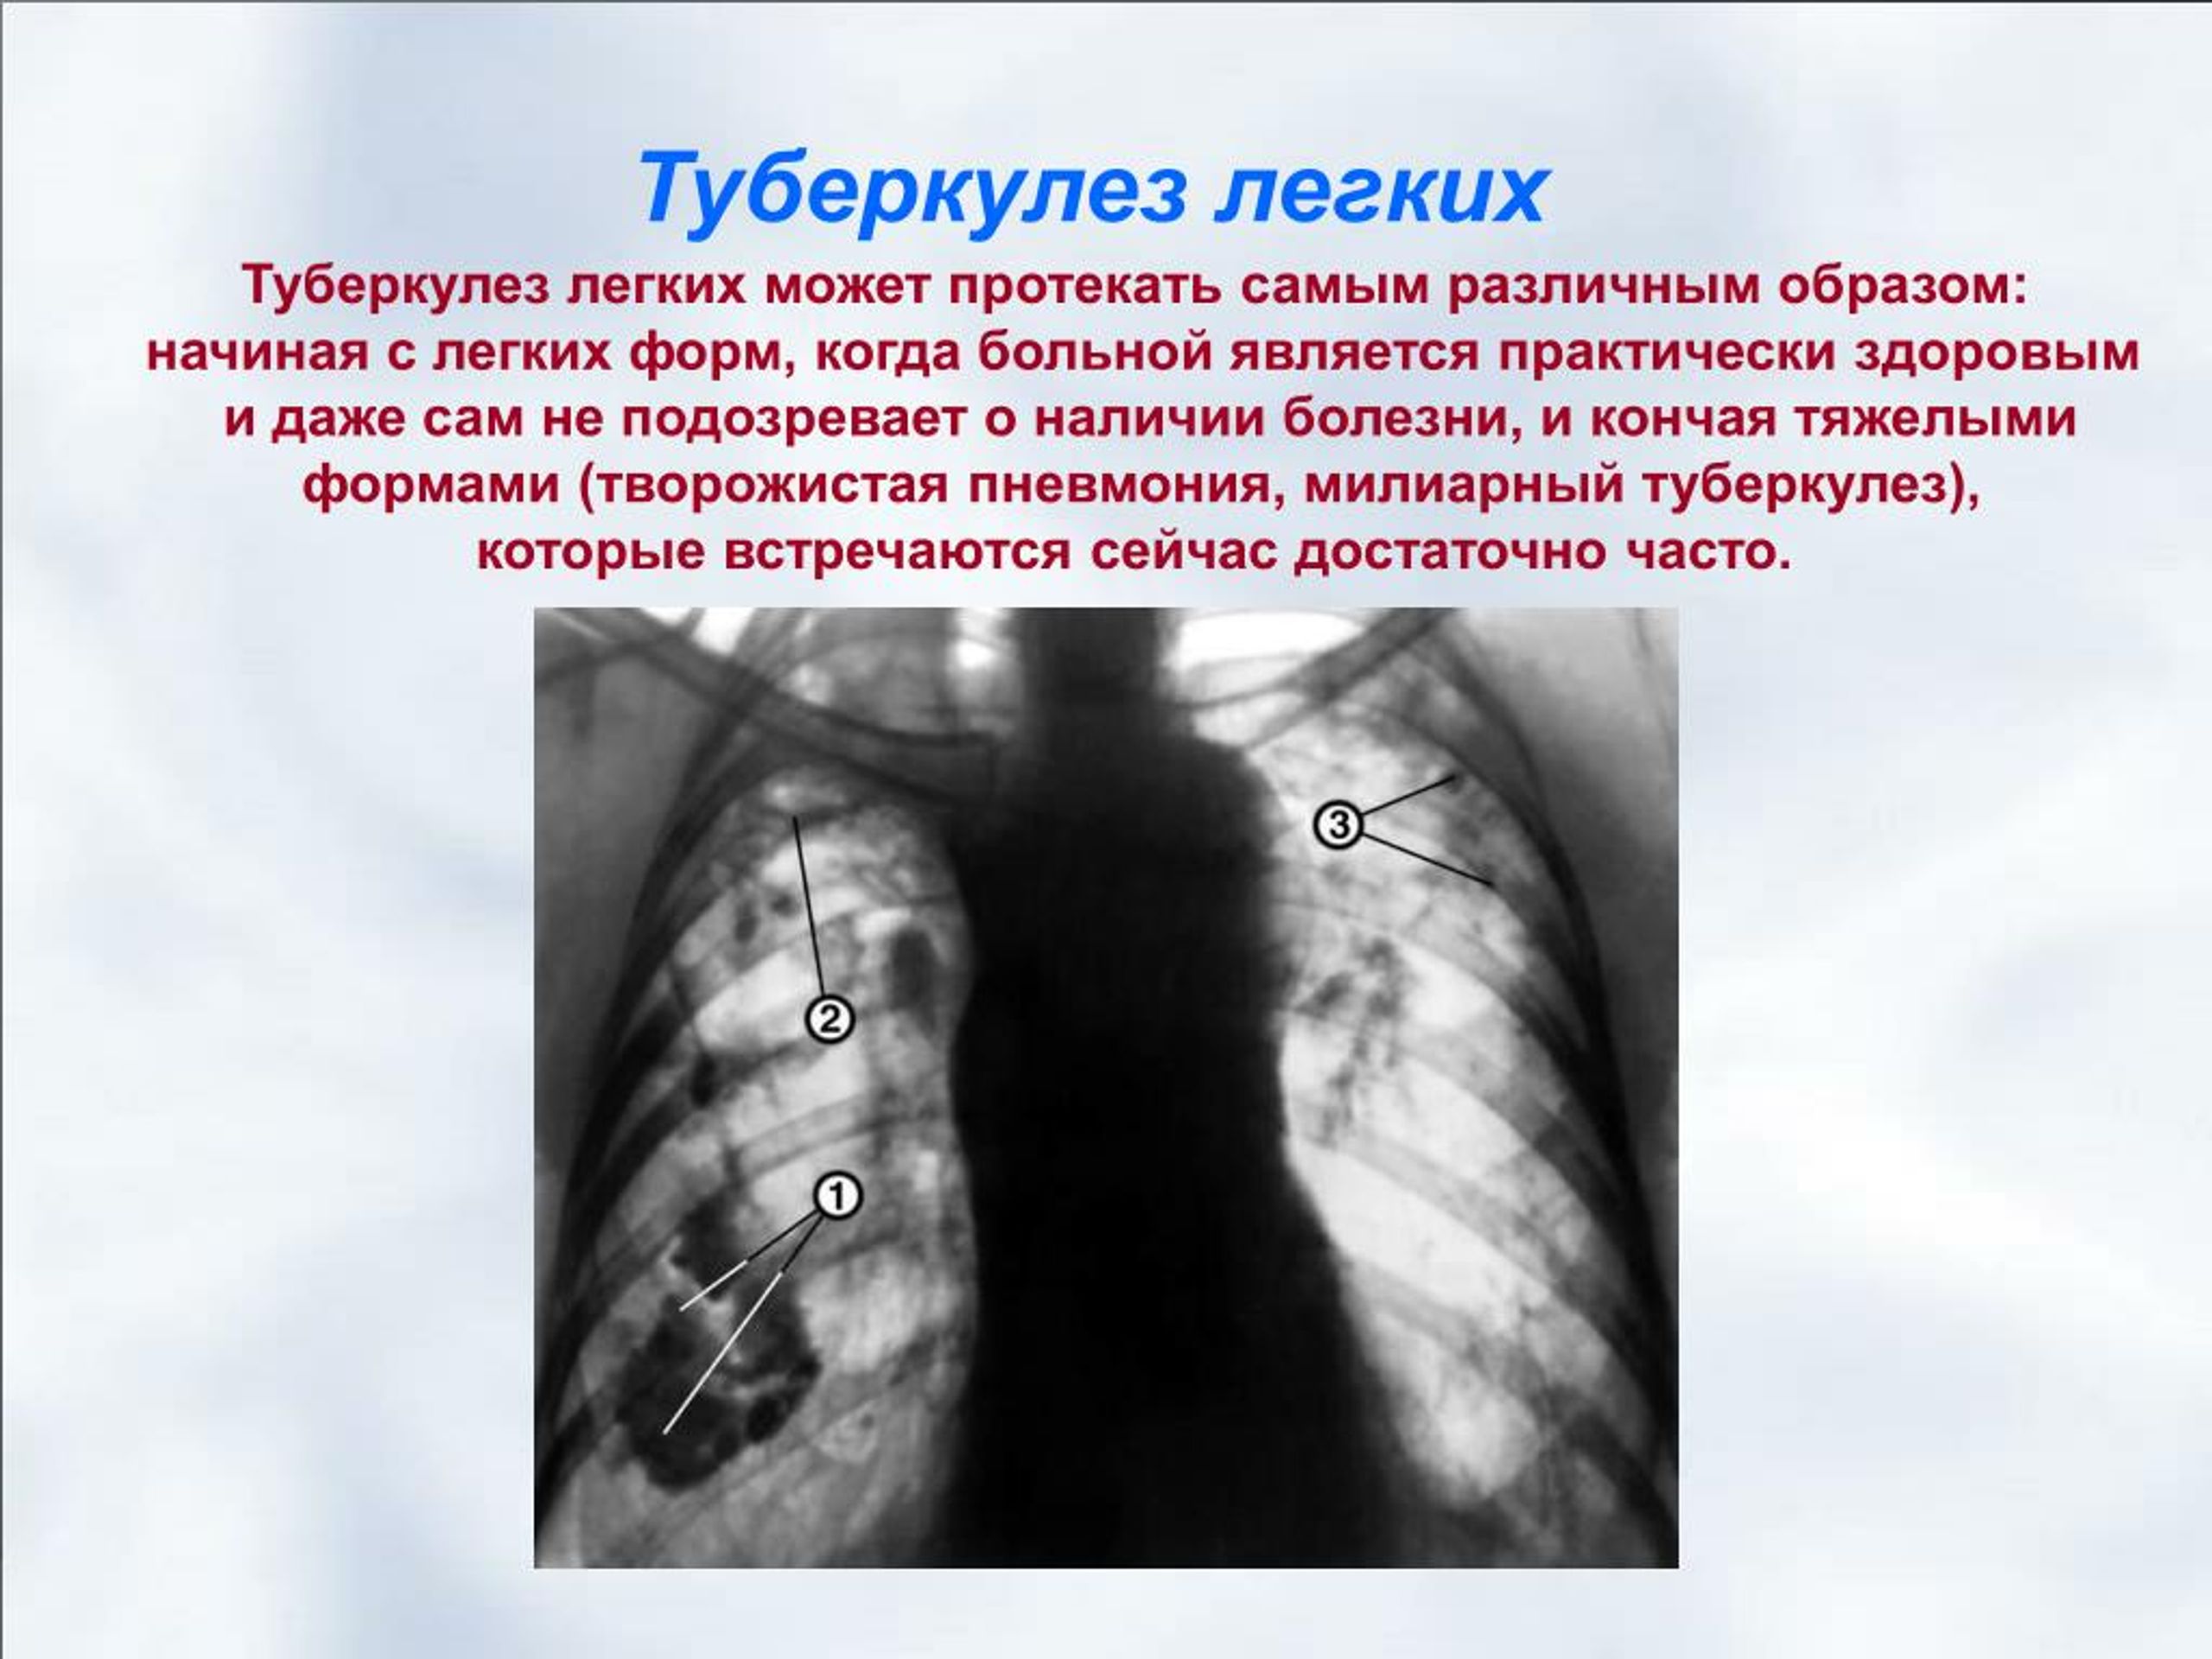 Туберкулез перевод. Туберкулёз открытой формы. Лёгкие больного туберкулезом.